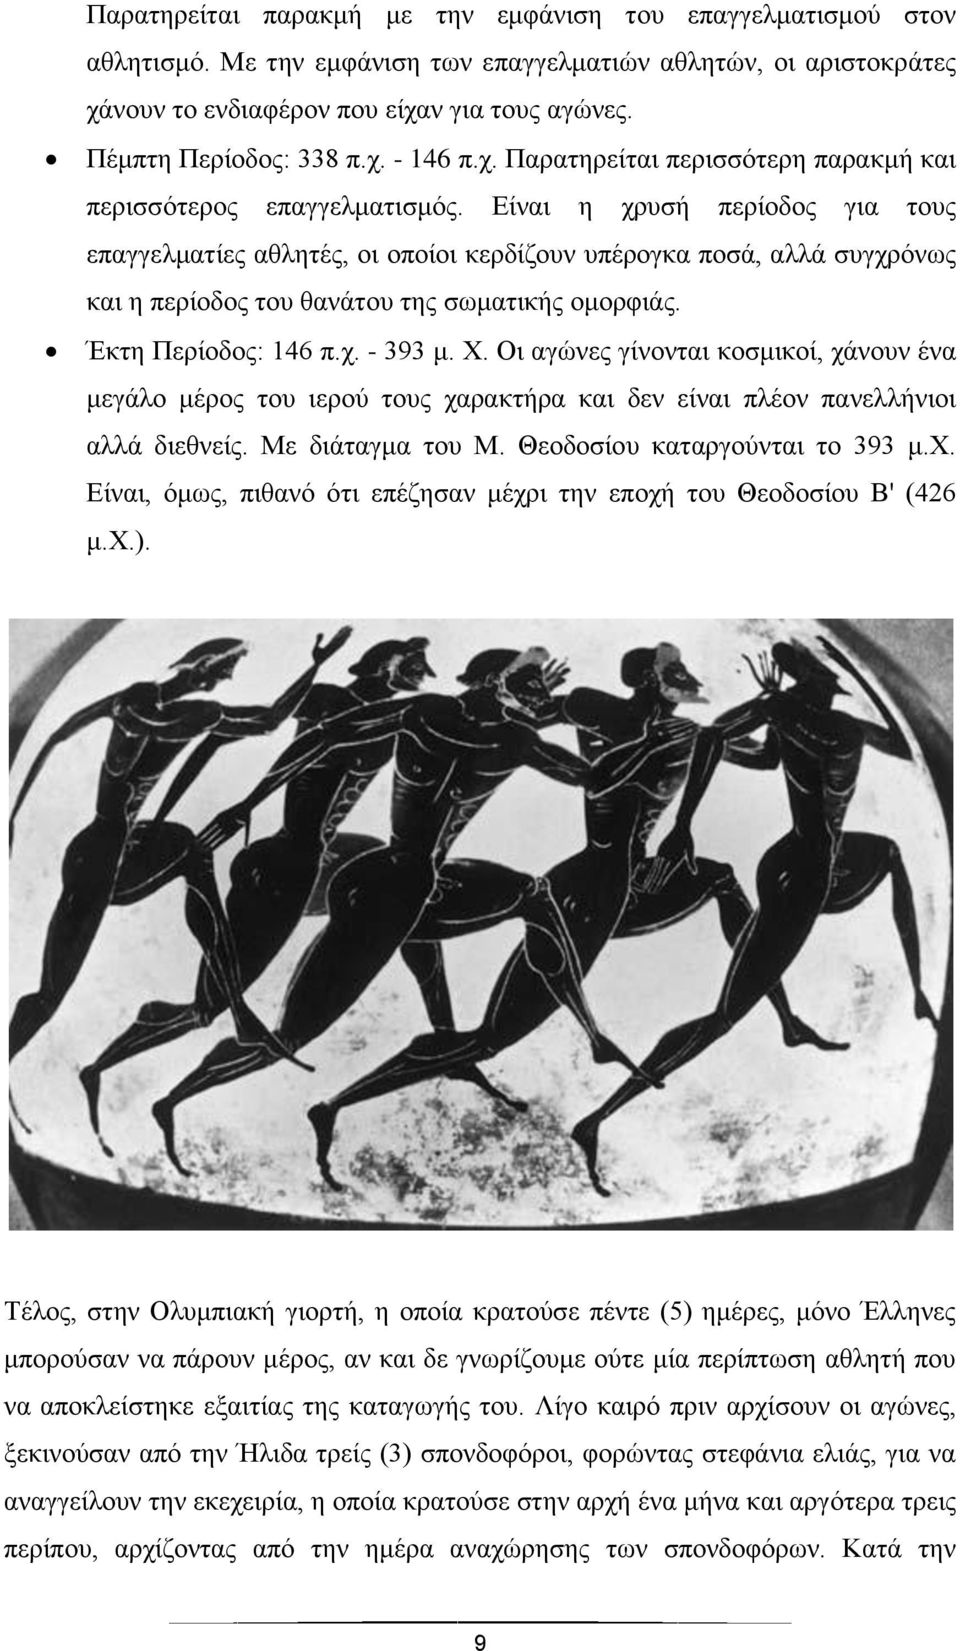 Είναι η χρυσή περίοδος για τους επαγγελματίες αθλητές, οι οποίοι κερδίζουν υπέρογκα ποσά, αλλά συγχρόνως και η περίοδος του θανάτου της σωματικής ομορφιάς. Έκτη Περίοδος: 146 π.χ. - 393 μ. Χ.